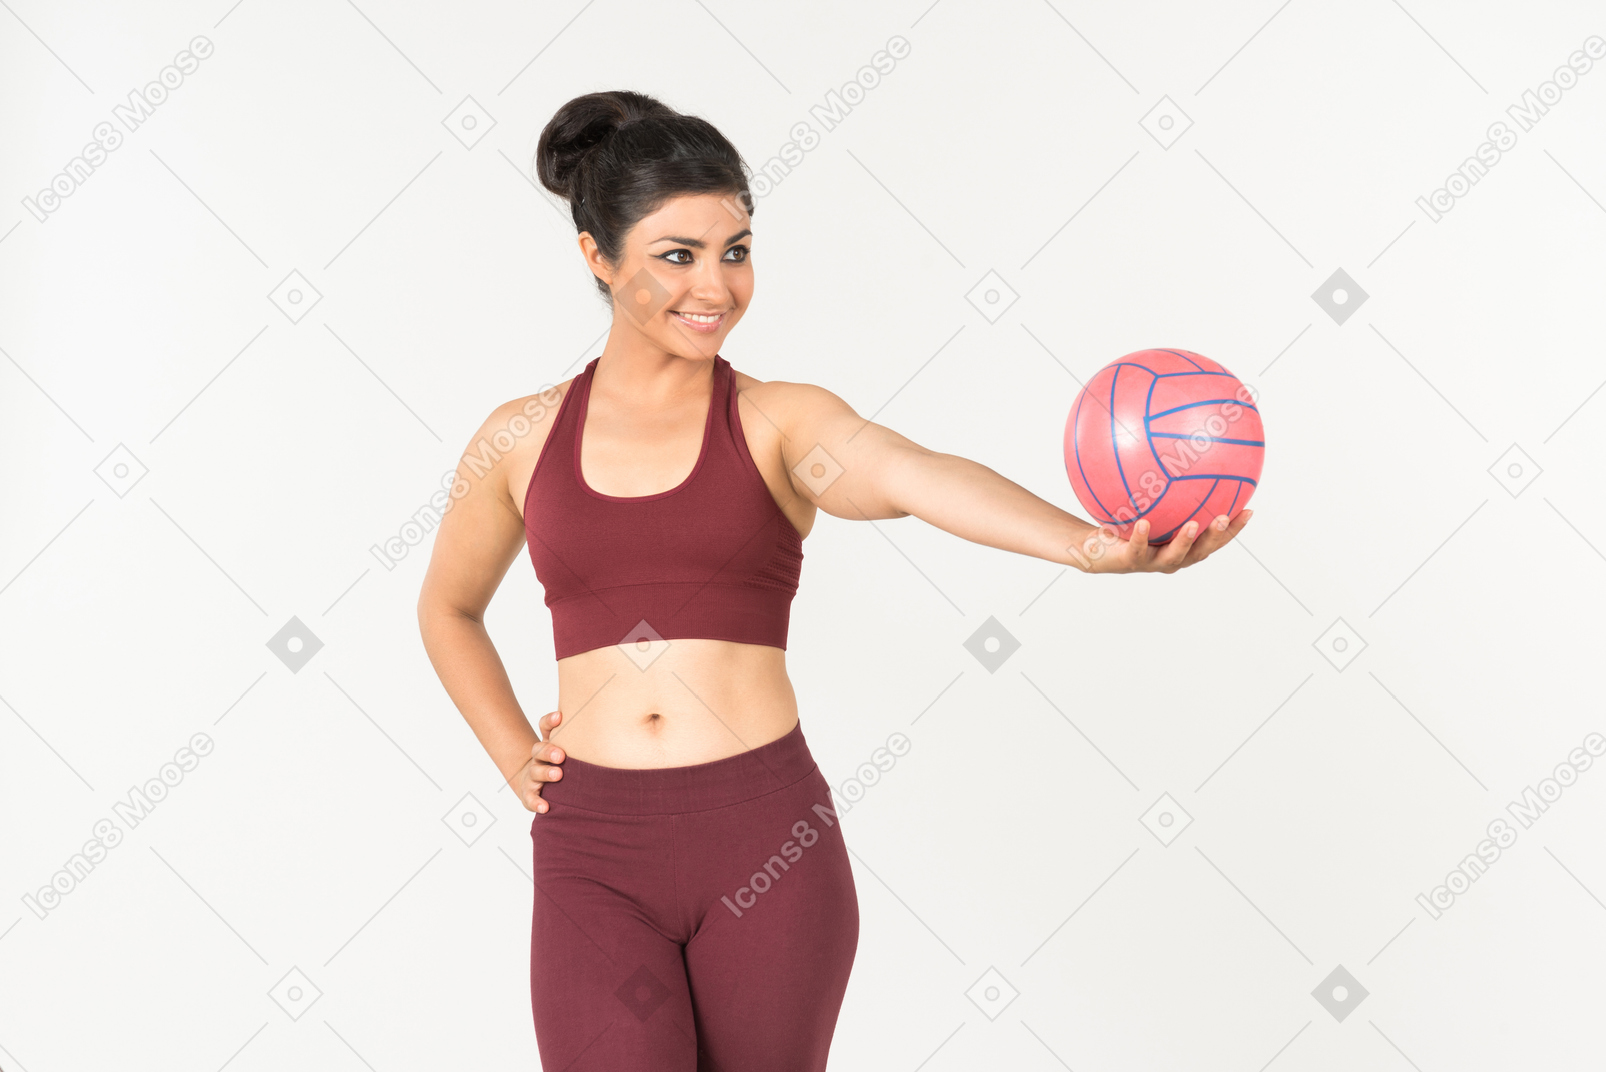 Junge indische frau in der sportkleidung, die rosa ball hält